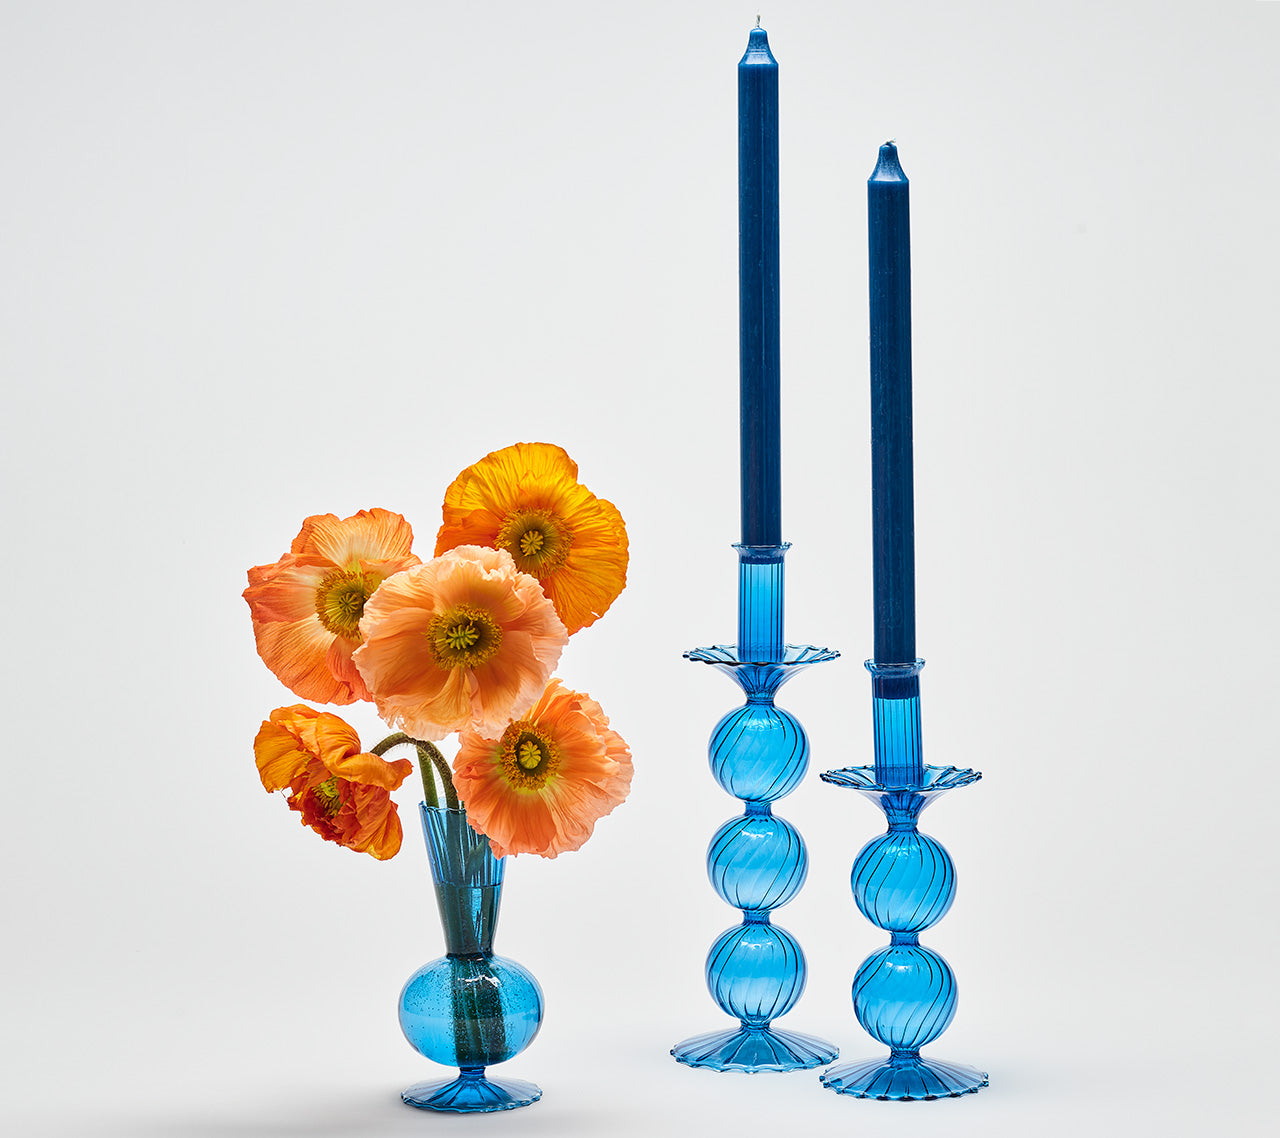 Kim Seybert Luxury Tess Bud Vase in Blue, Set of 3 in a Box